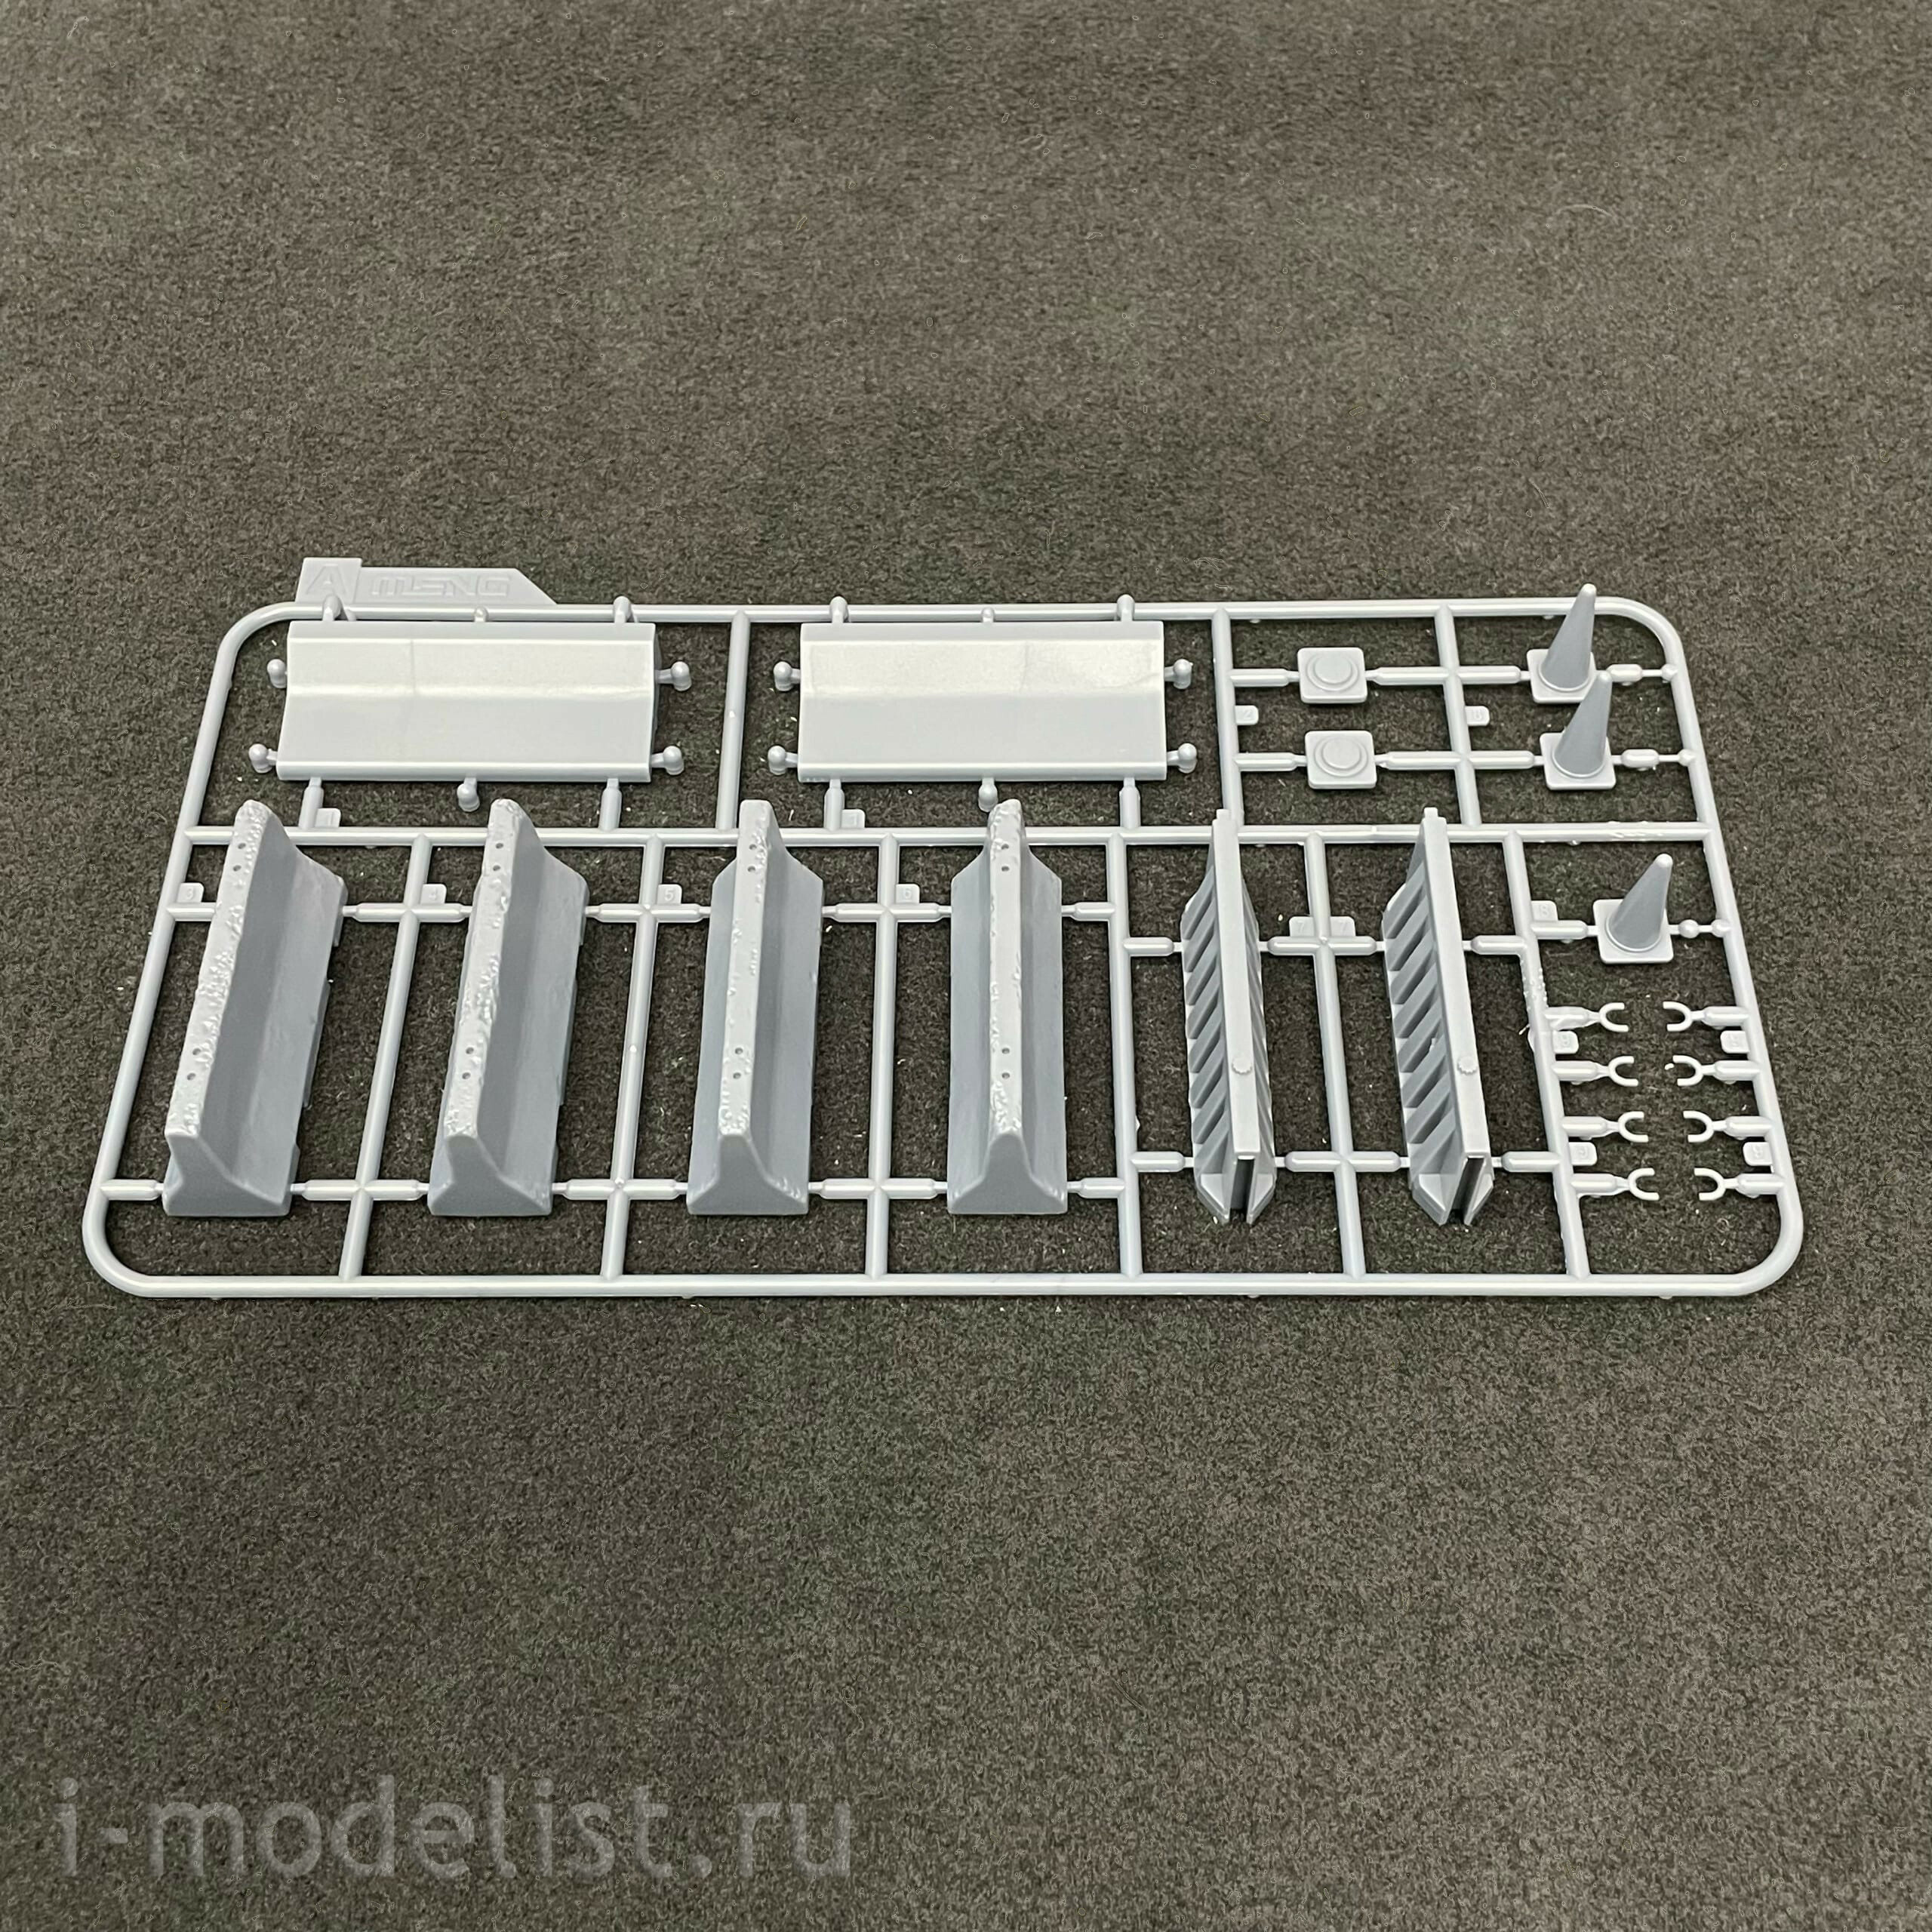 SPS-012 Meng 1/35 Concrete & Plastic Barrier Set